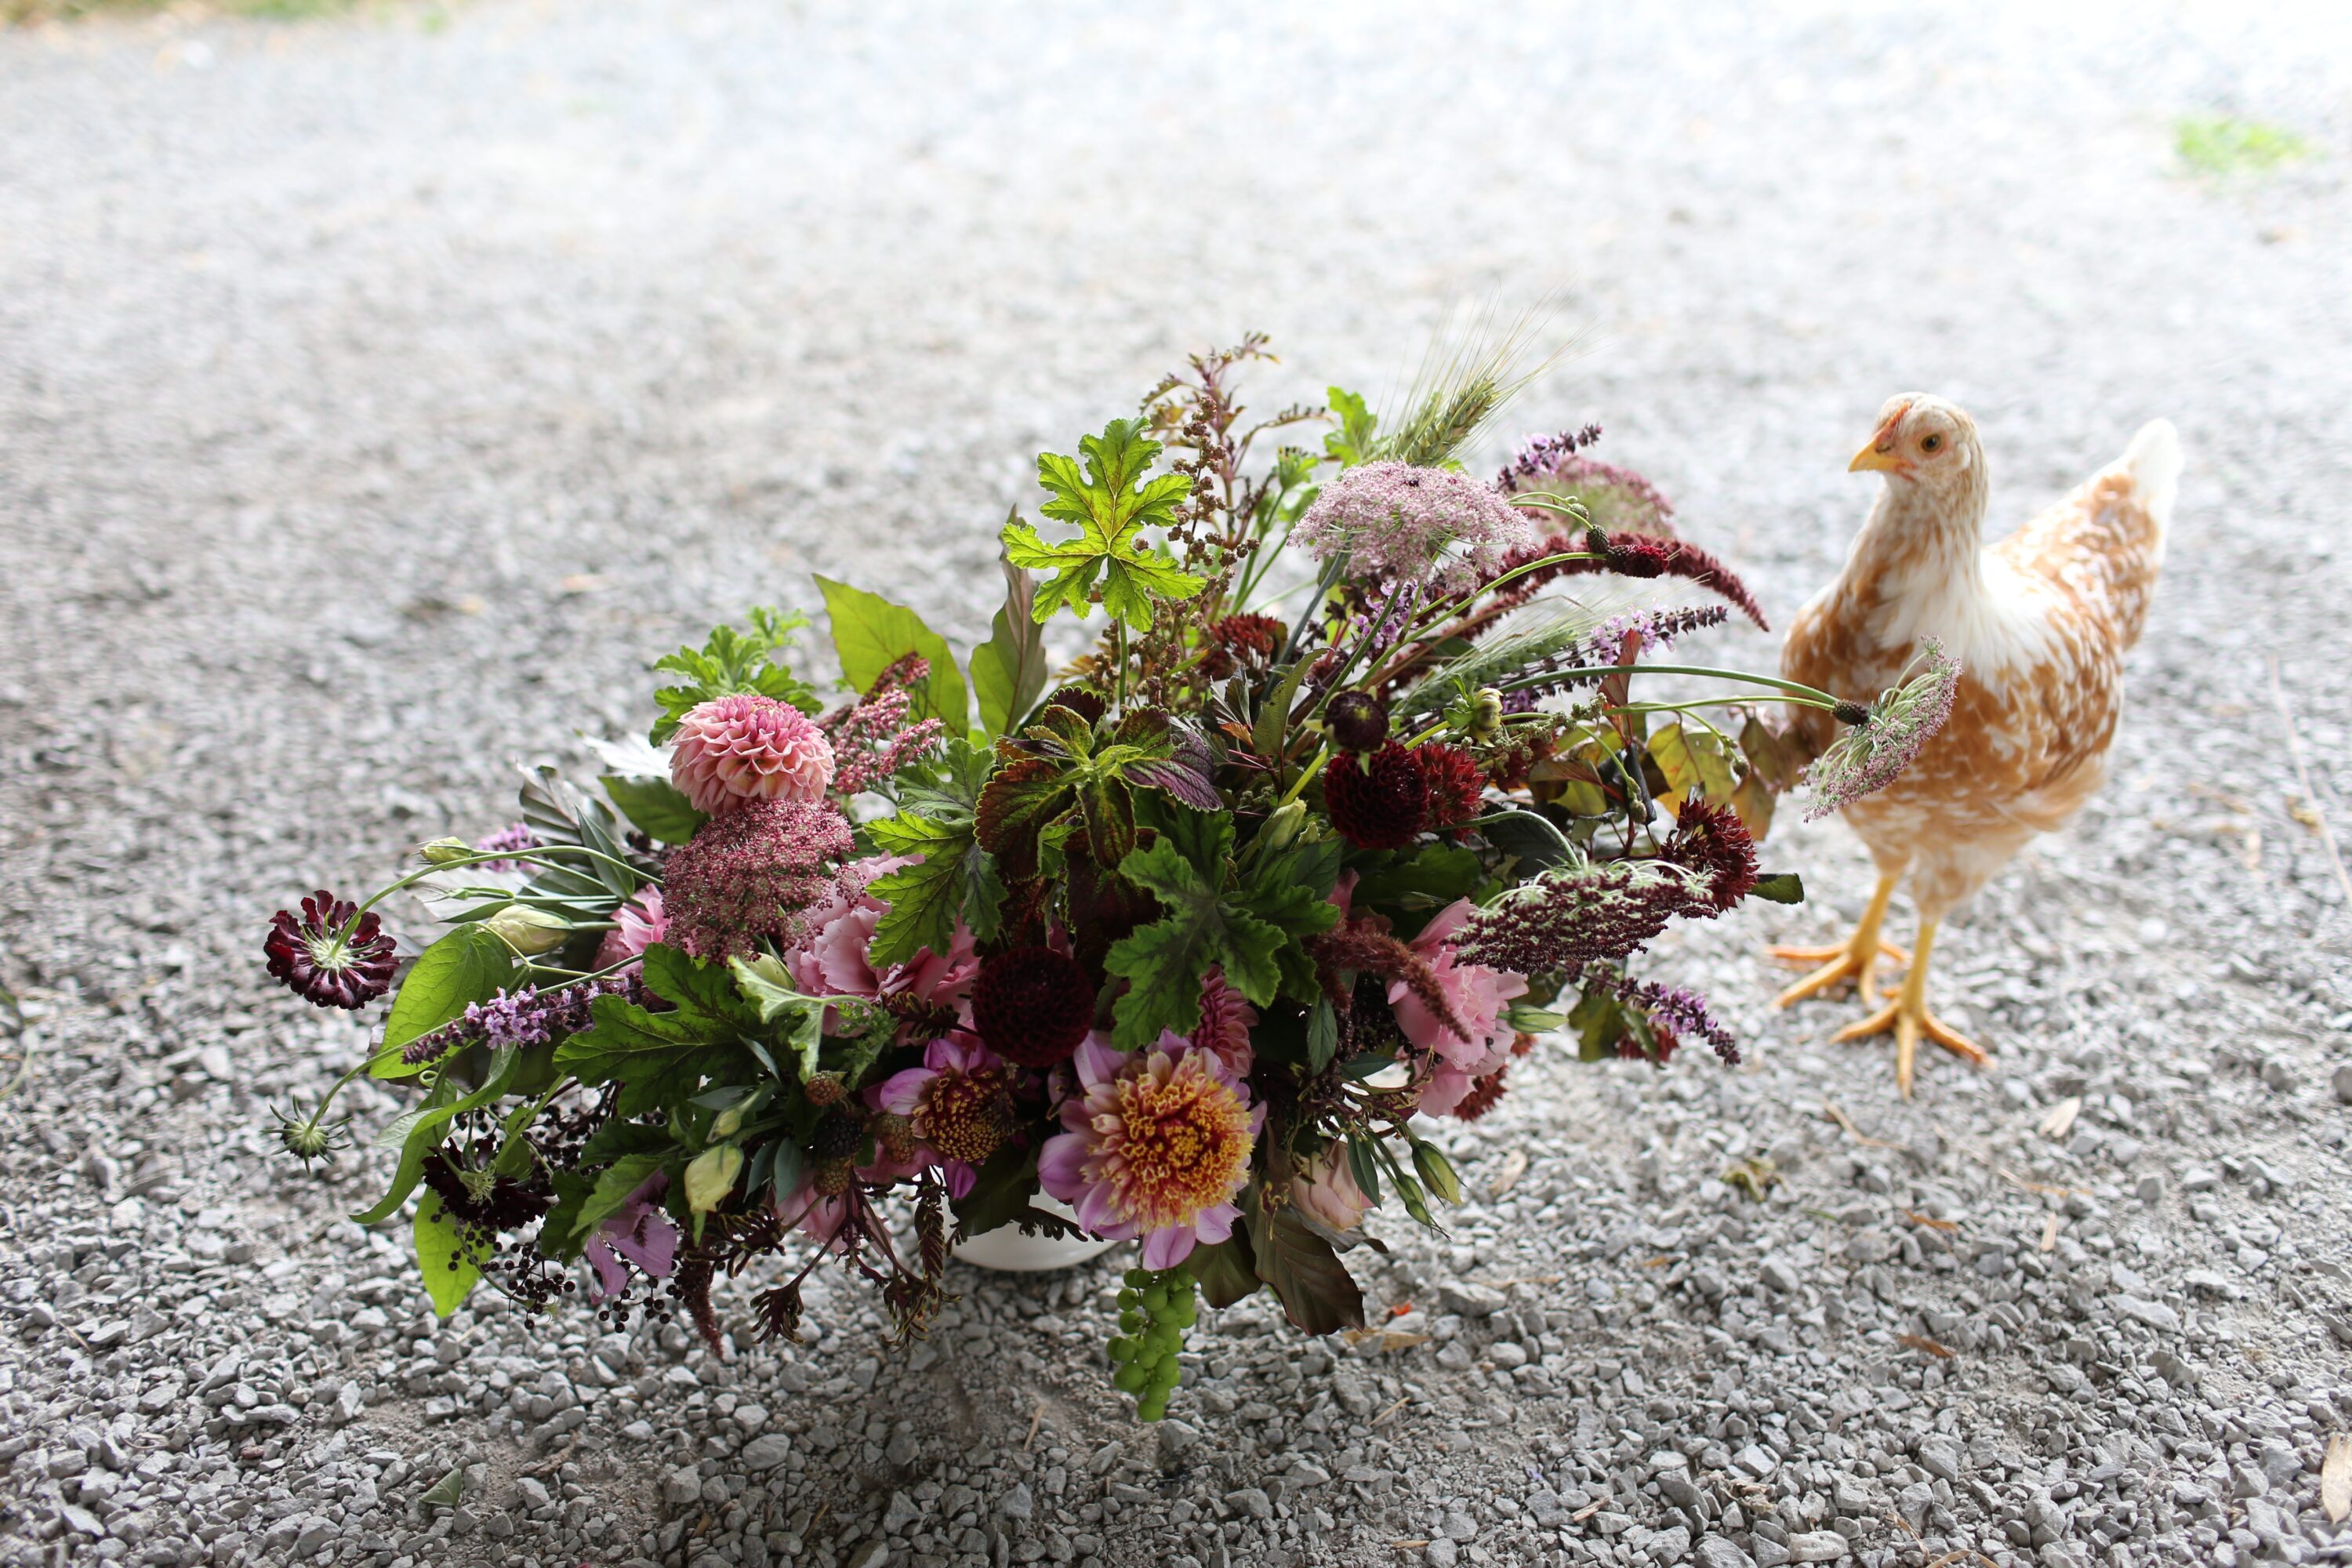 A chicken standing next to a flower arrangement